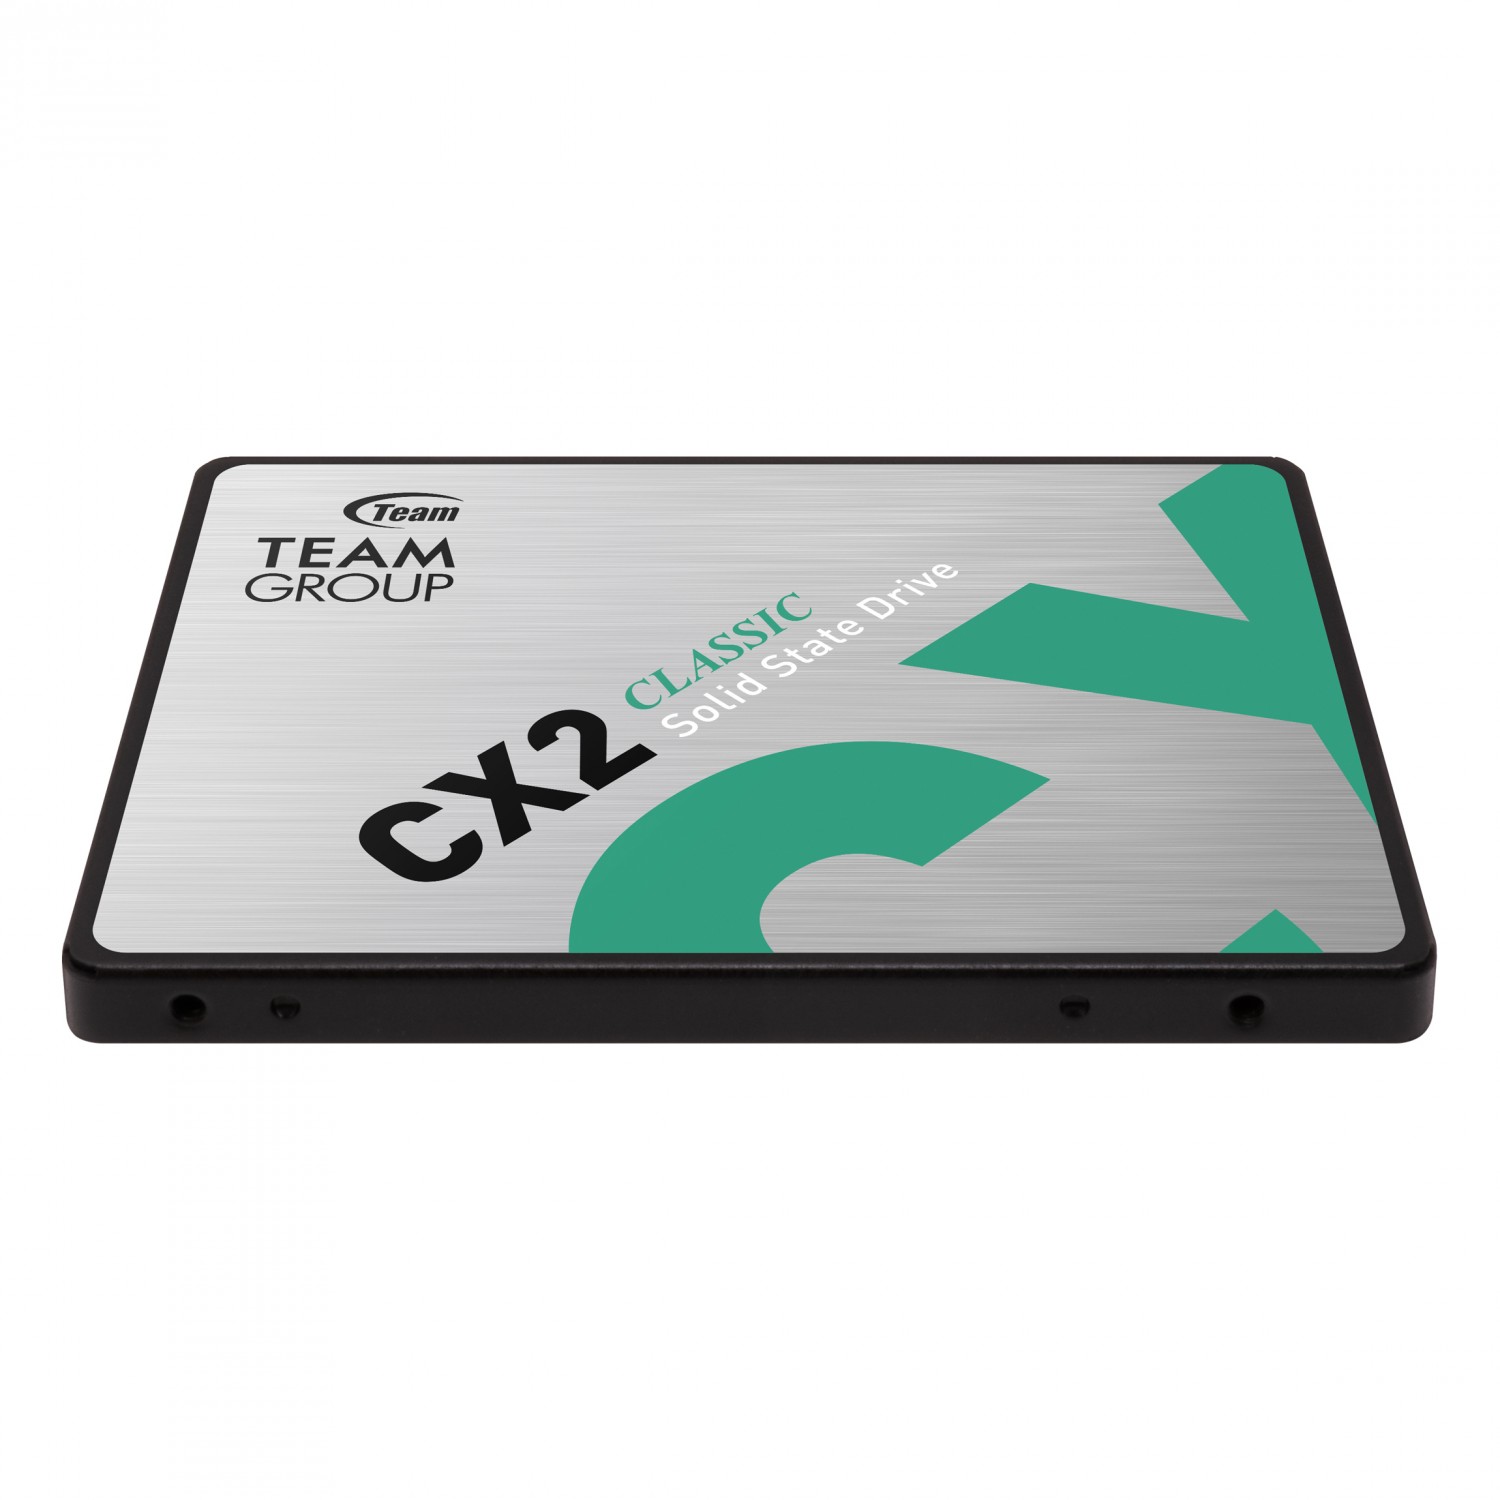 حافظه اس اس دی TeamGroup CX2 512GB-2